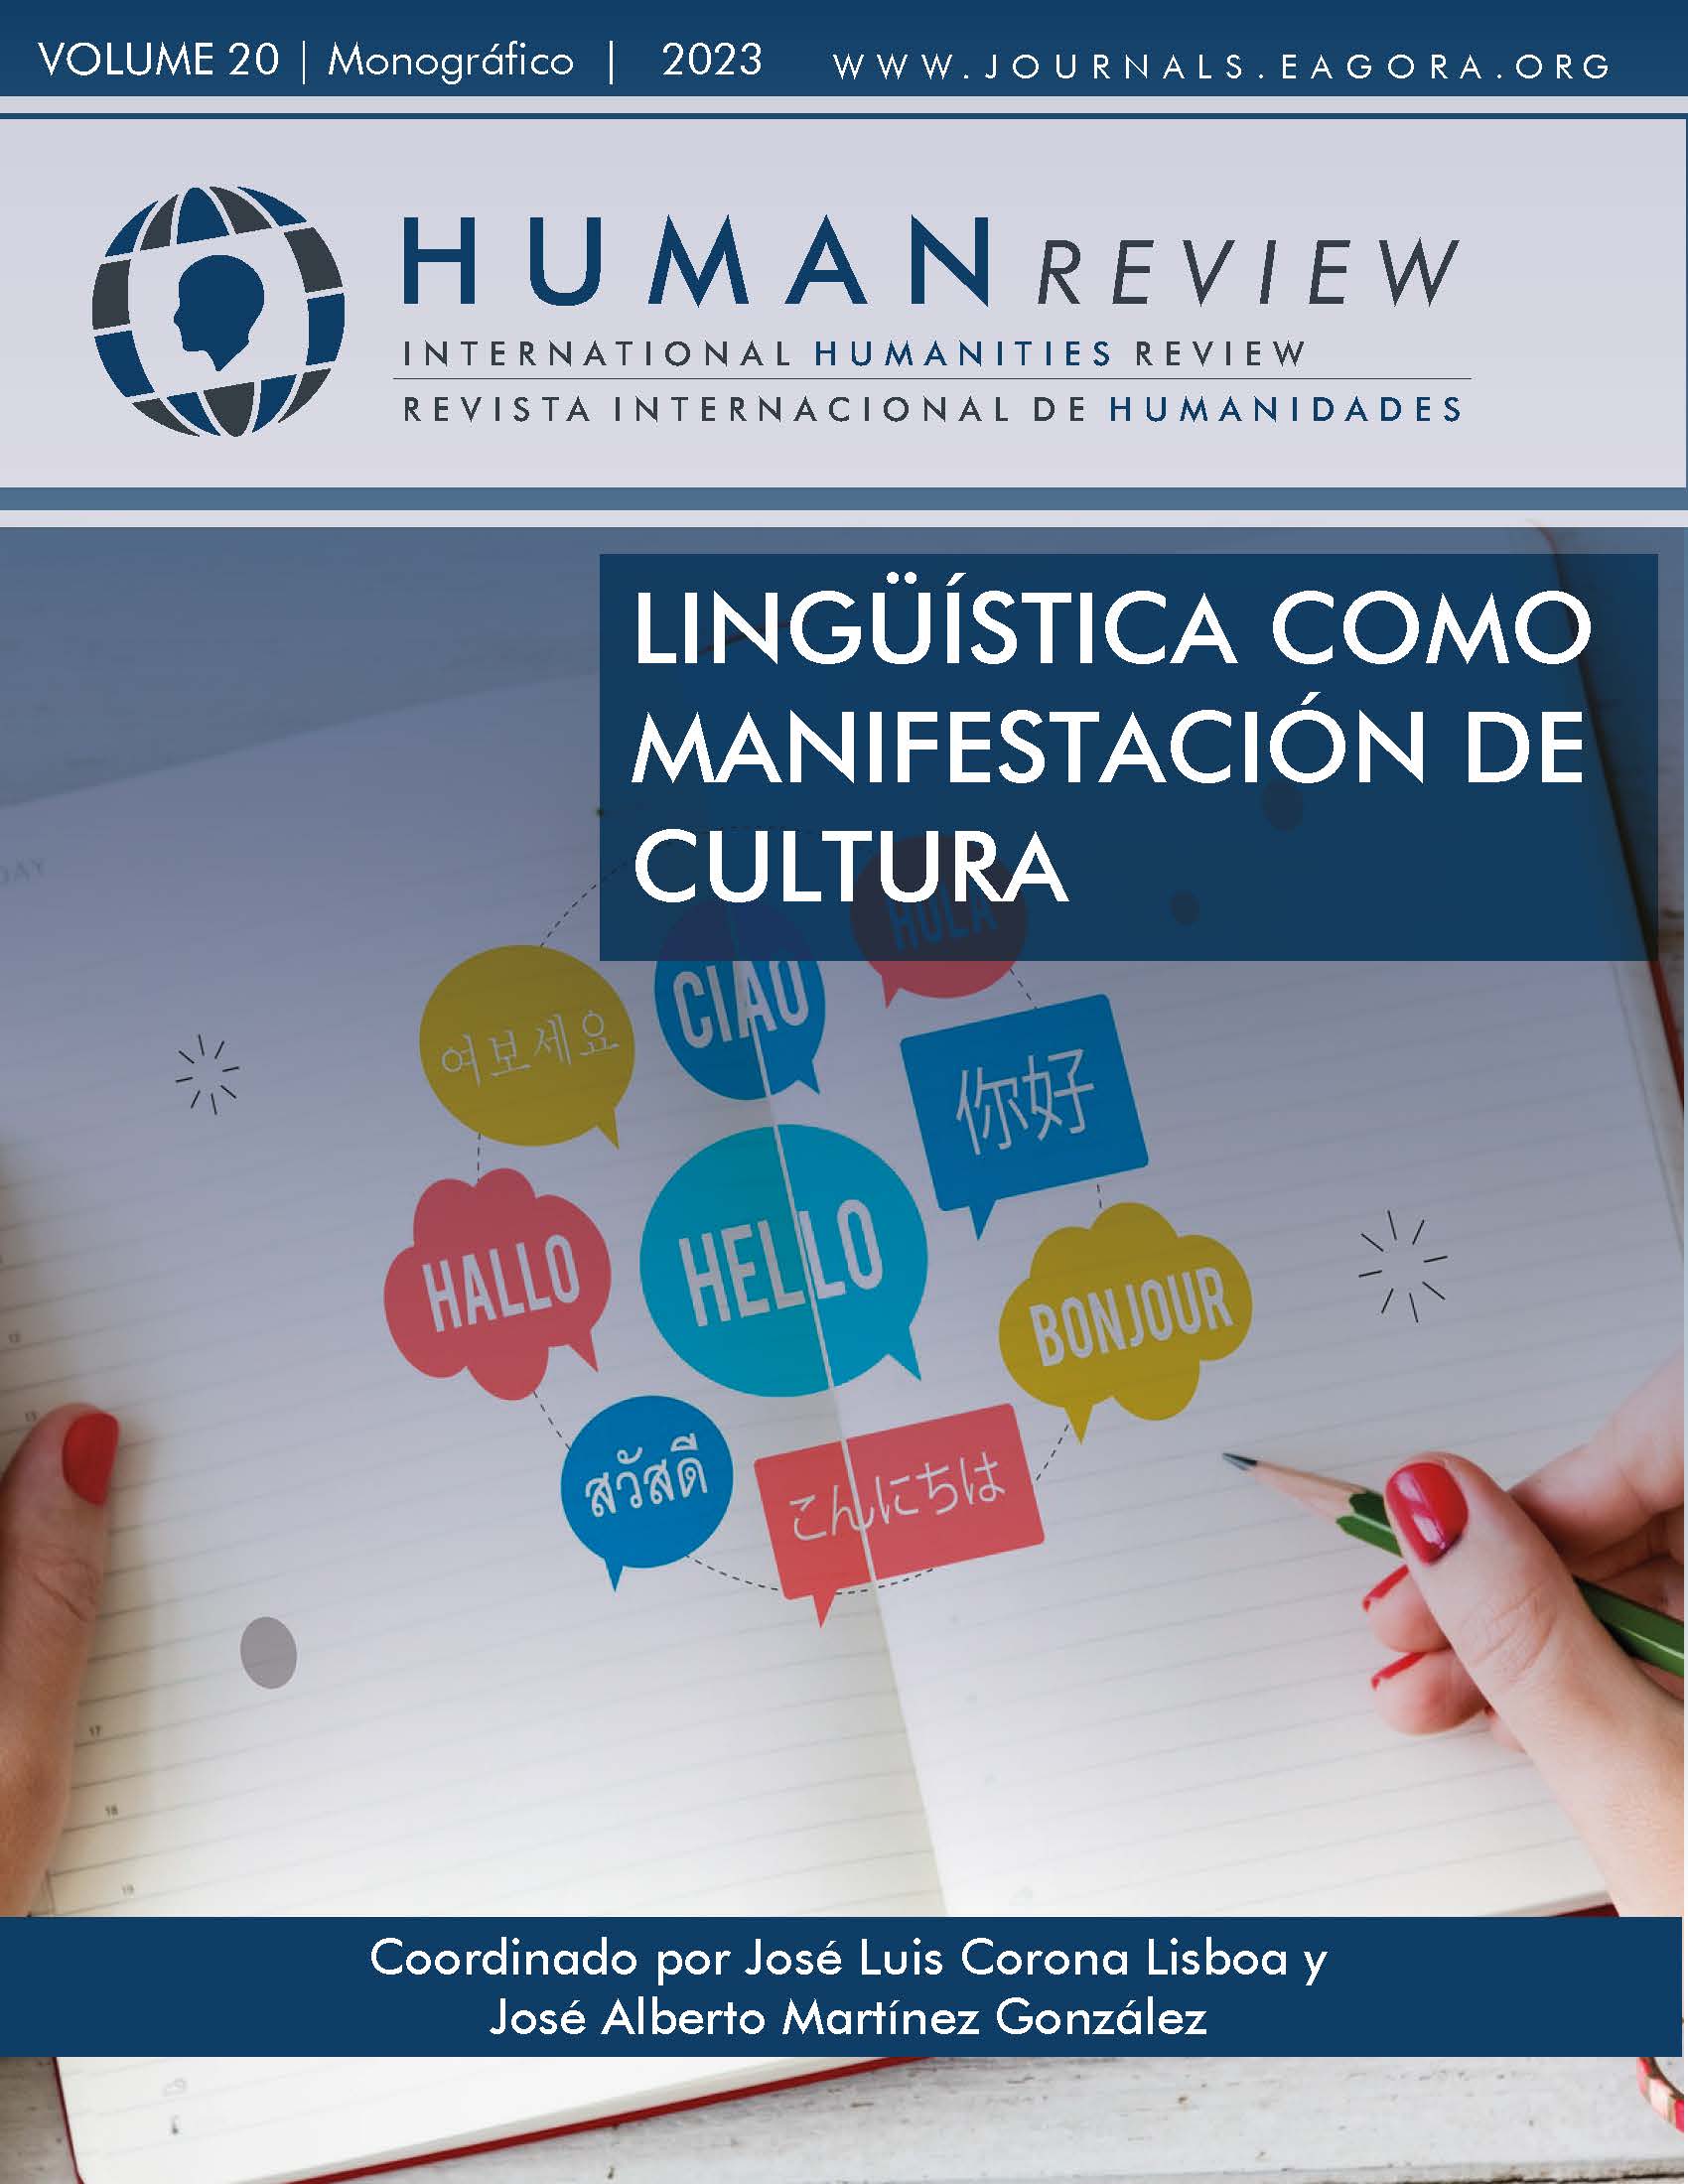 					Visualizar v. 20 n. 4 (2023): Monografía: "A Linguística como Manifestação da Cultura"
				